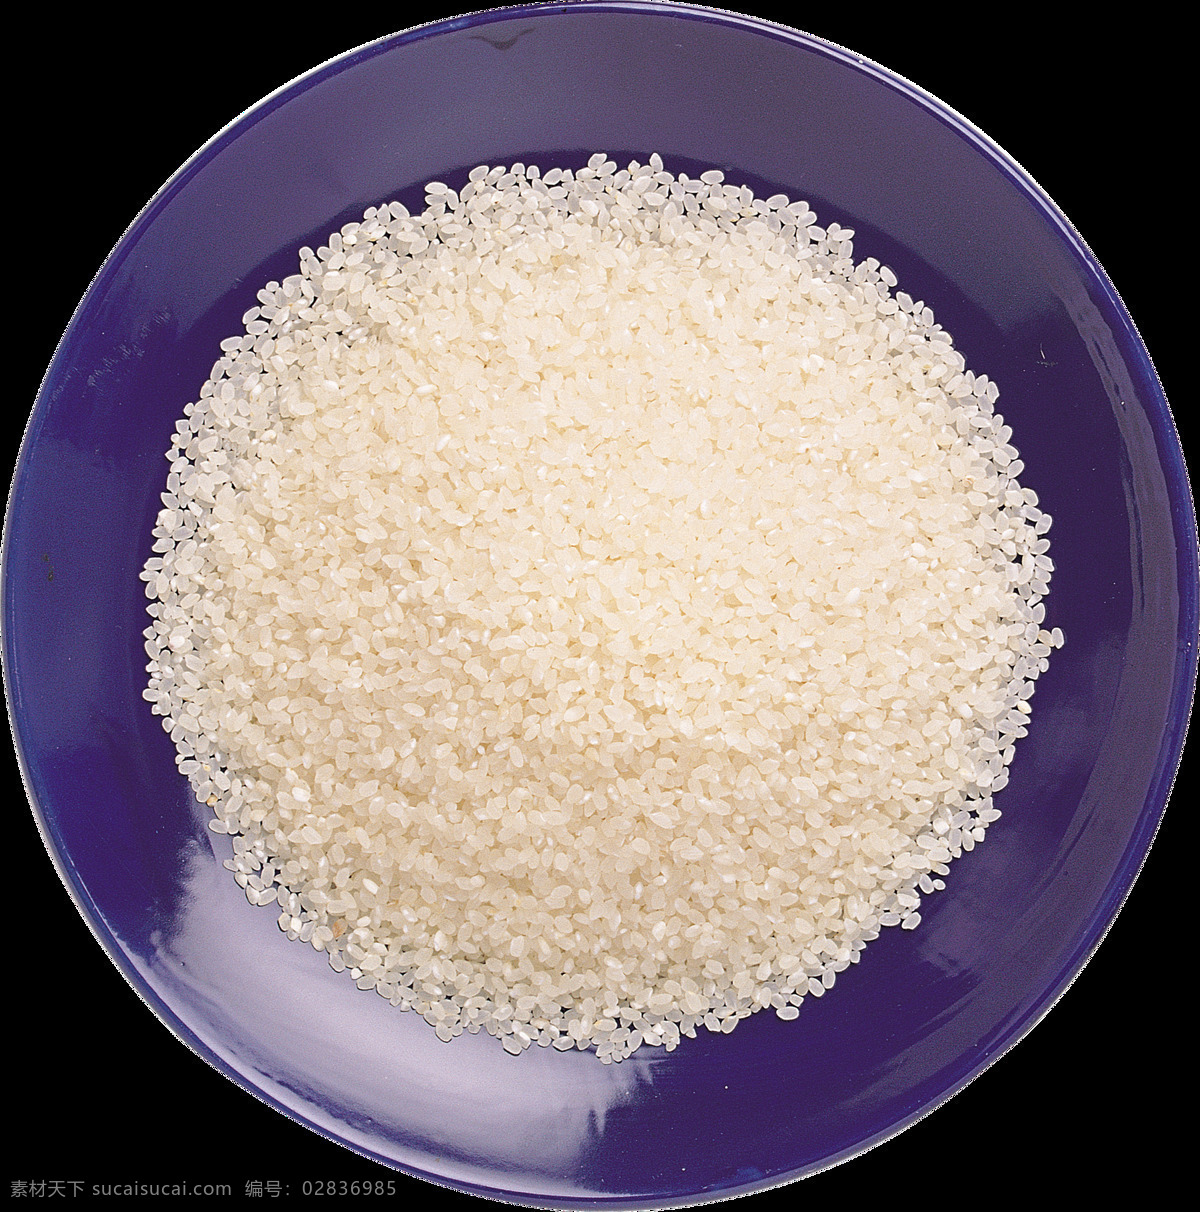 颗粒 饱满 大米 粮食 矢量图 装饰图 装饰画 大米实物 饱满大米 长粒大米 米 勺子的大米 碗里的大米 布袋里的大米